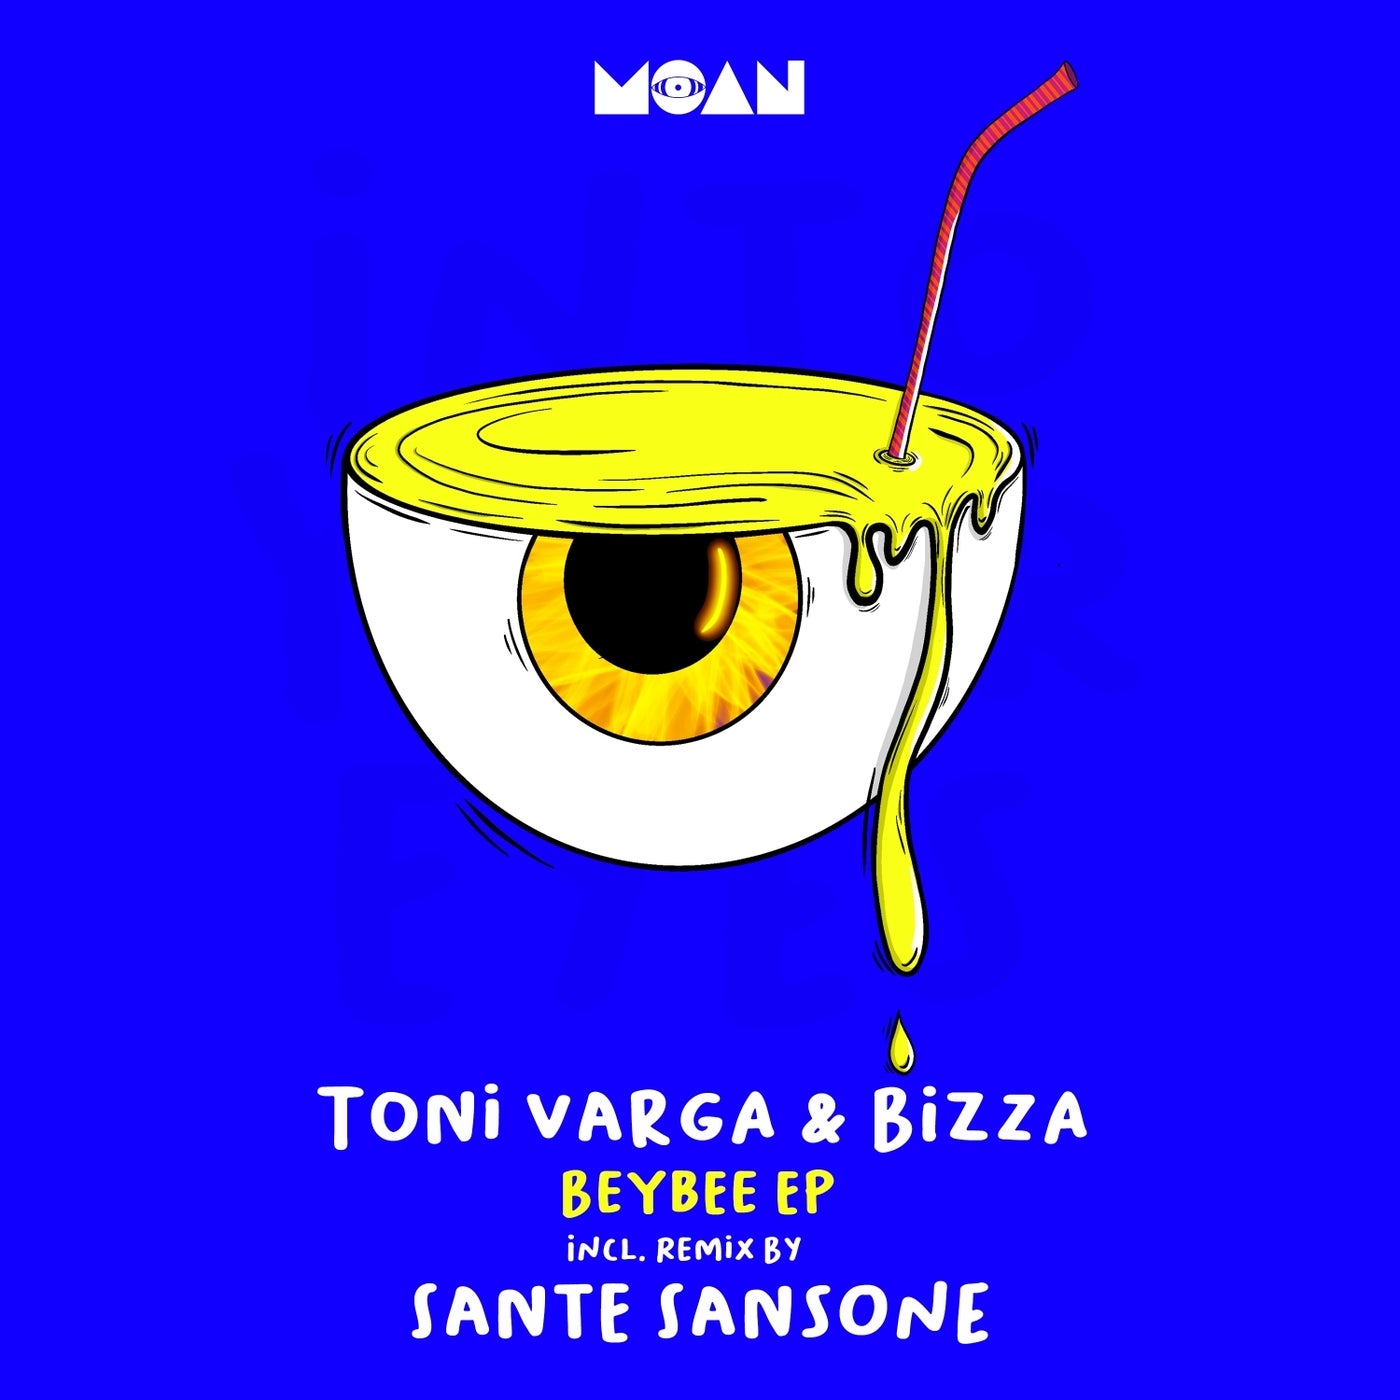 image cover: Toni Varga, BizZa - Beybee EP on Moan